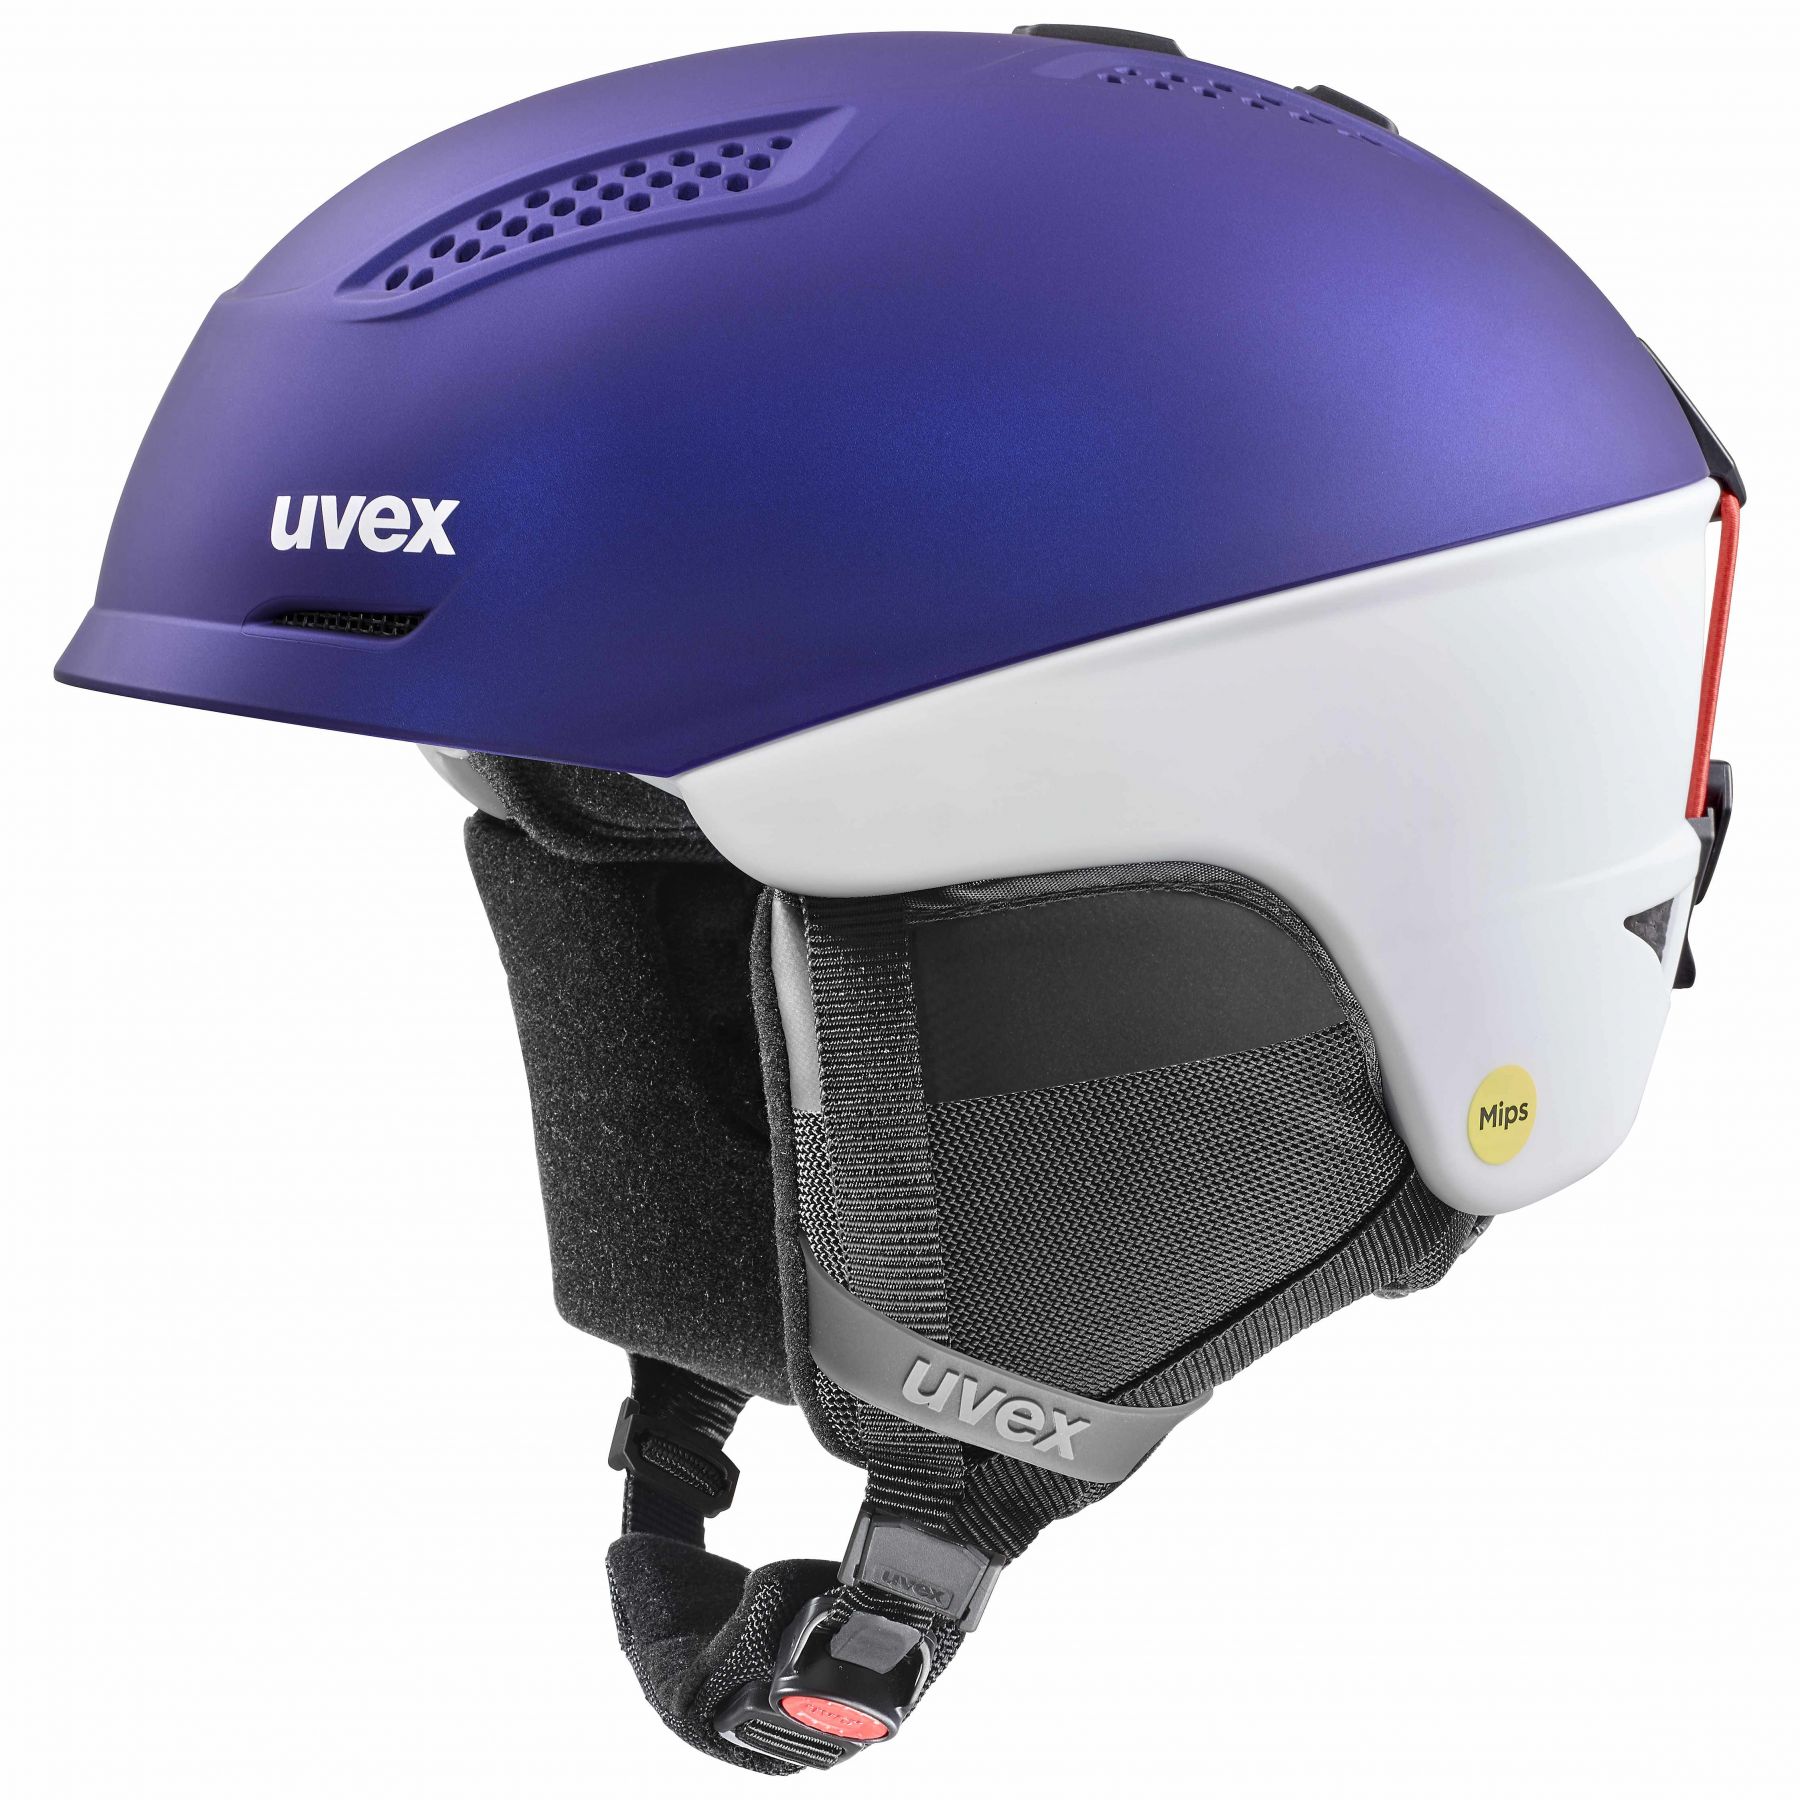 Brug Uvex Ultra MIPS, skihjelm, lilla/hvid til en forbedret oplevelse